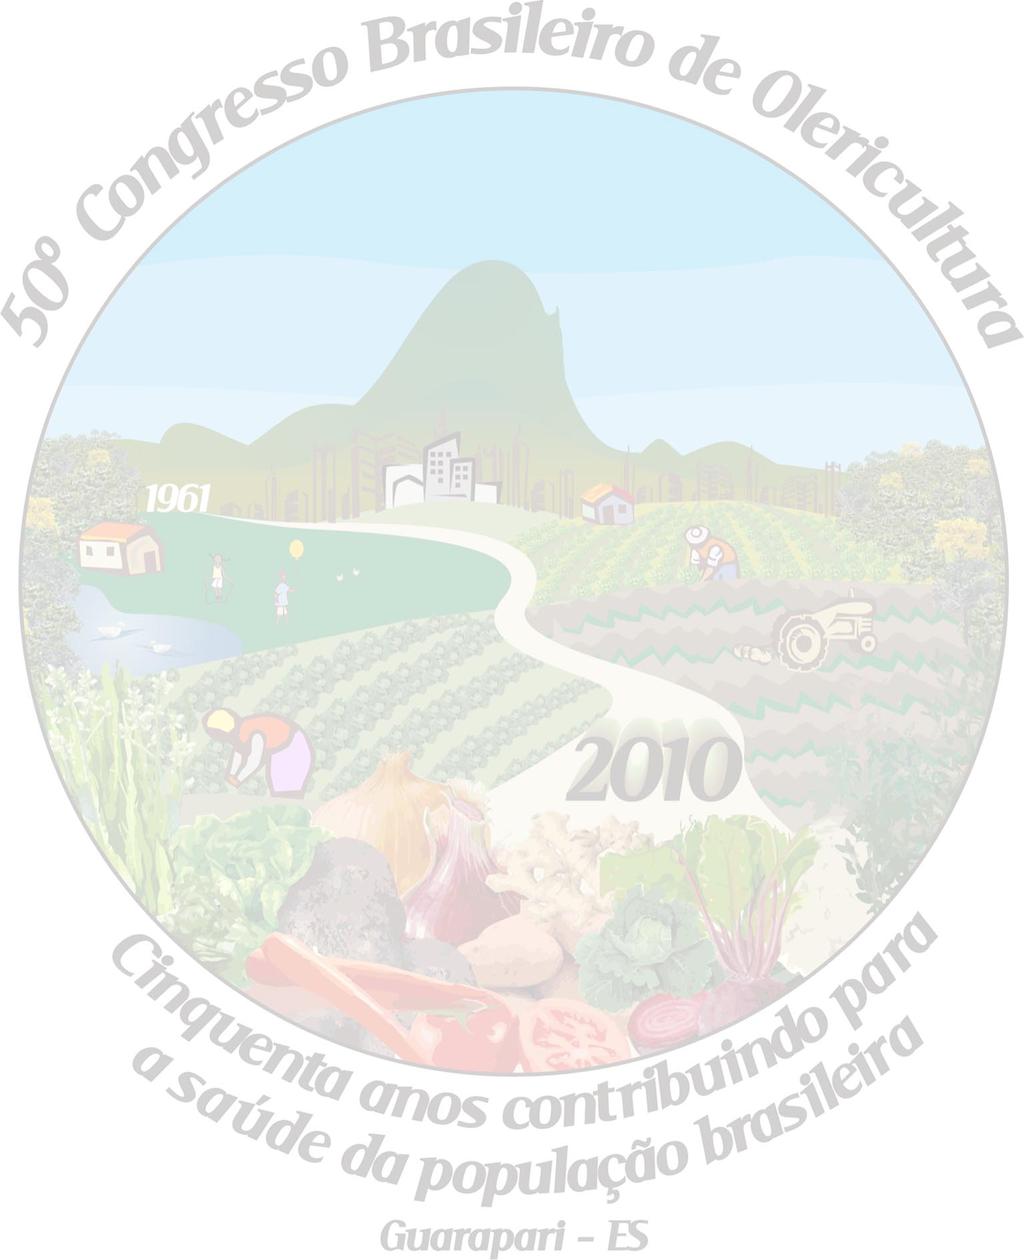 CARDOSO RR; LUZ JMQ; CAMILO JS; SILVA MAD; ALMEIDA RF. Produção hidropônica de Artemisia absinthium em diferentes concentrações de solução nutritiva. 2010. Horticultura Brasileira 28: S1248-S1255.